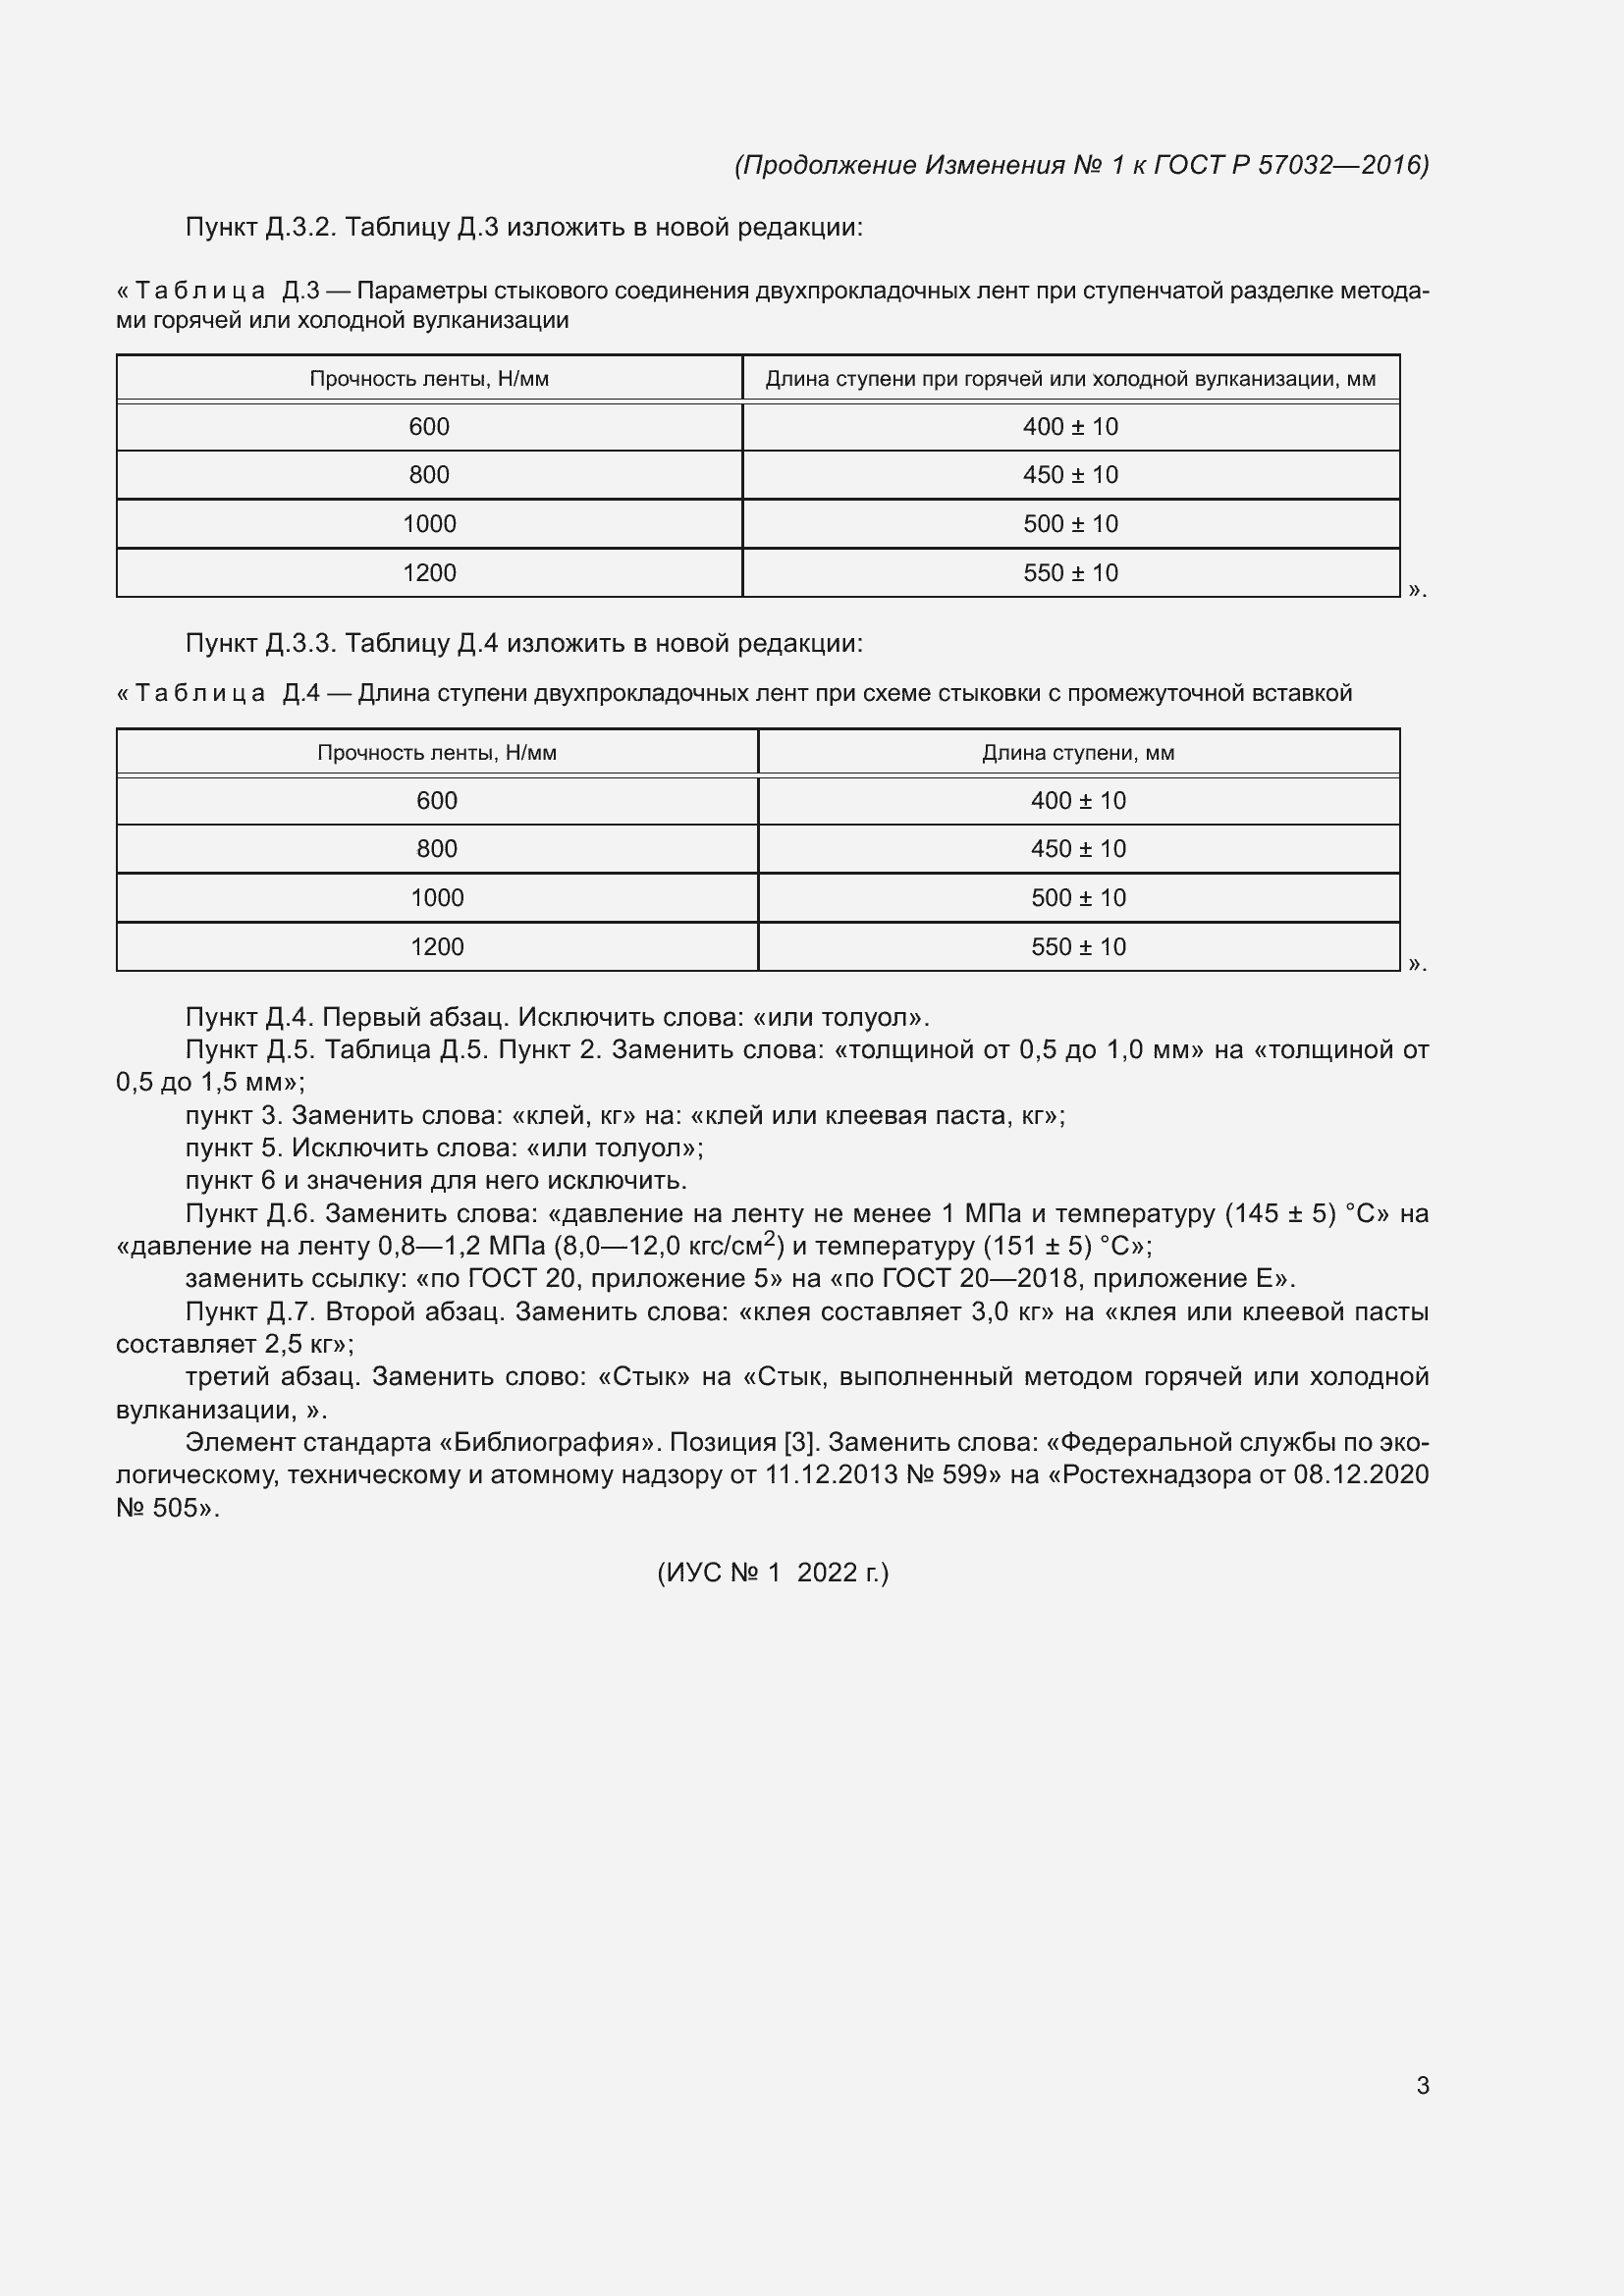 Изменение №1 к ГОСТ Р 57032-2016